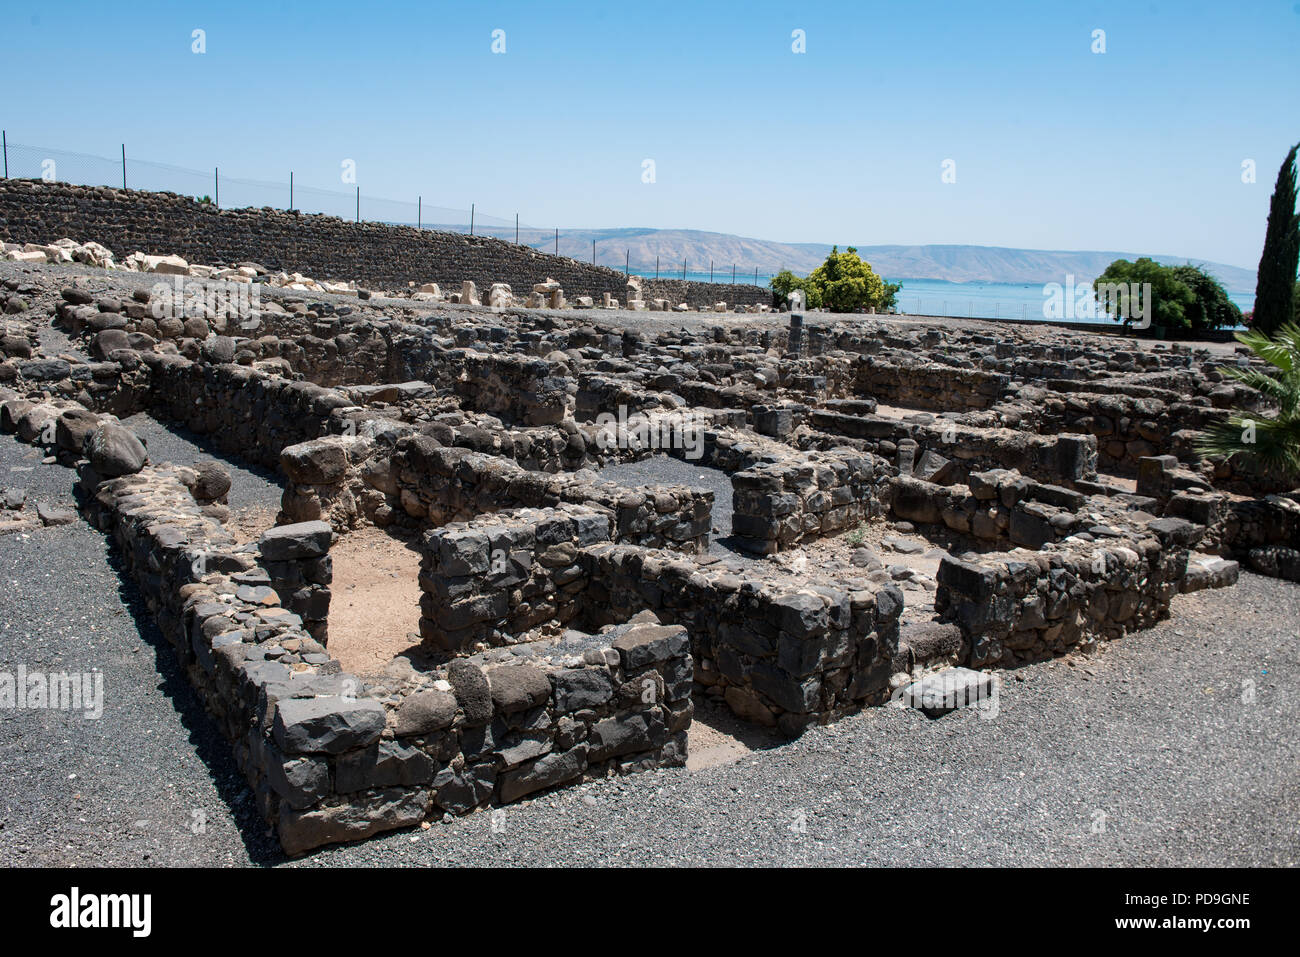 Les ruines de la sombre basalte village de Capharnaüm, sur les bords de la mer de Galilée, où Jésus et saint Pierre a vécu et rencontré Andrew, James, John Banque D'Images